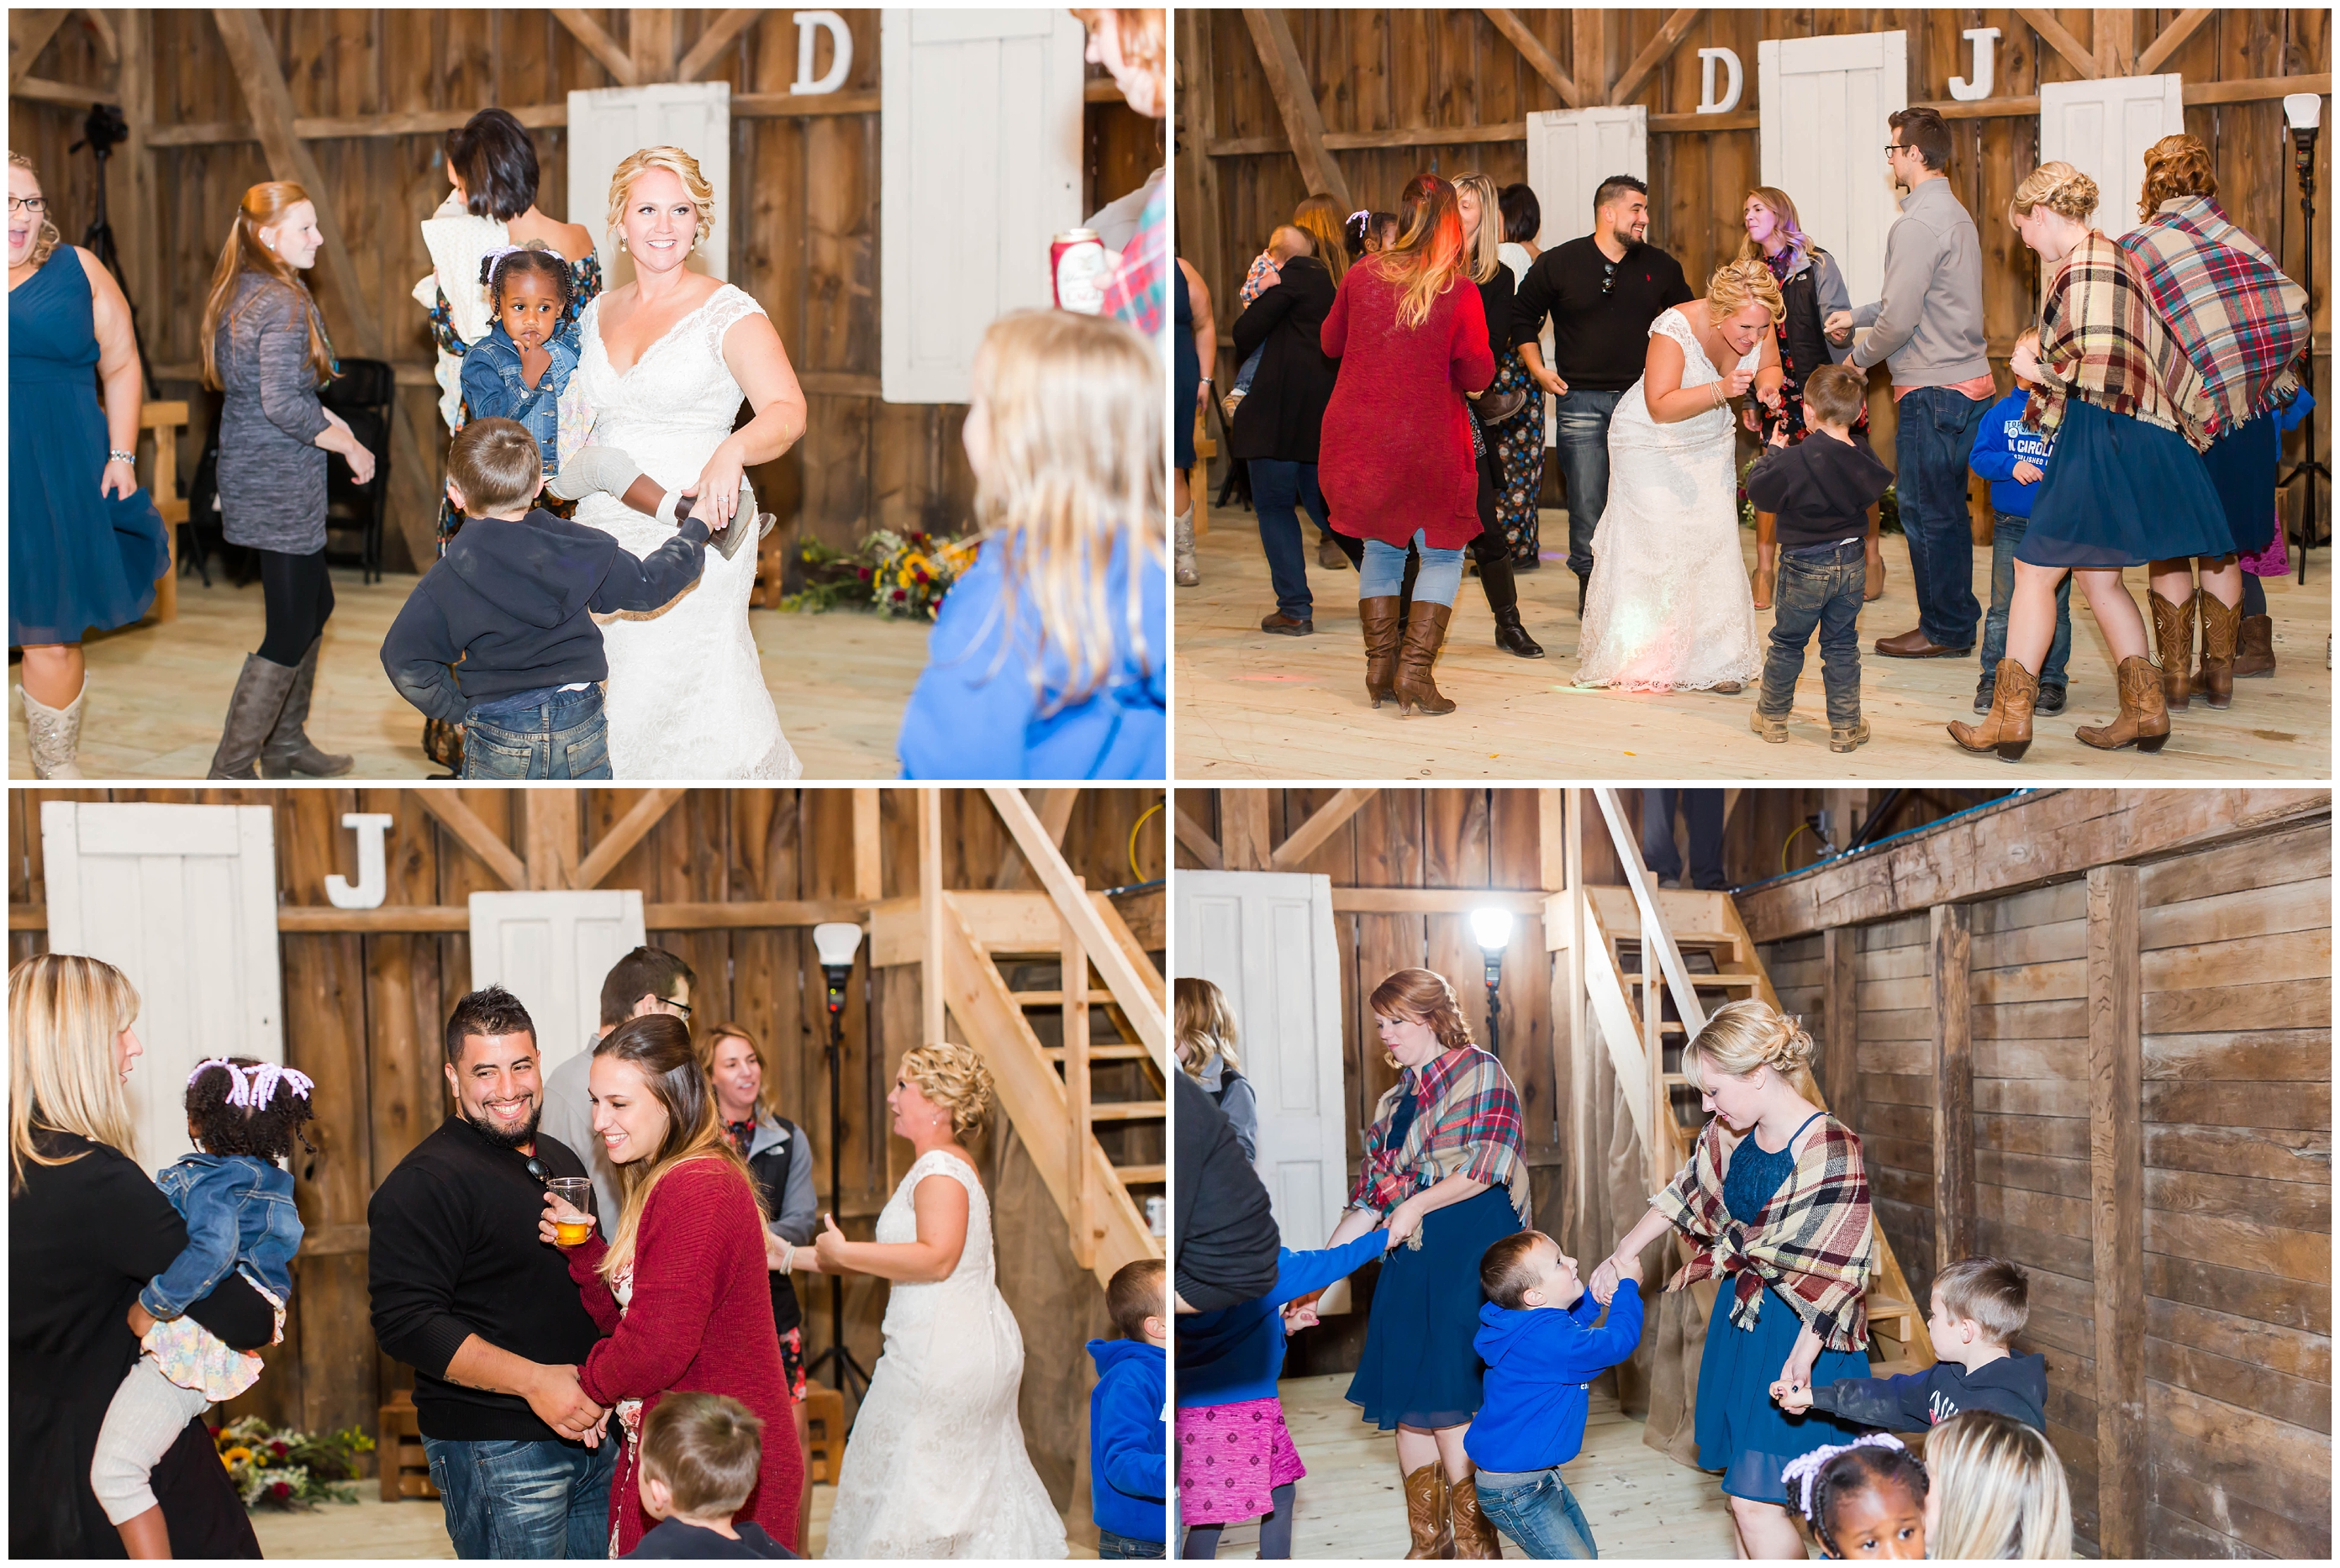 loren jackson photography,photographer akron ohio,rehm barn wedding,rustic barn wedding,wayne county ohio,